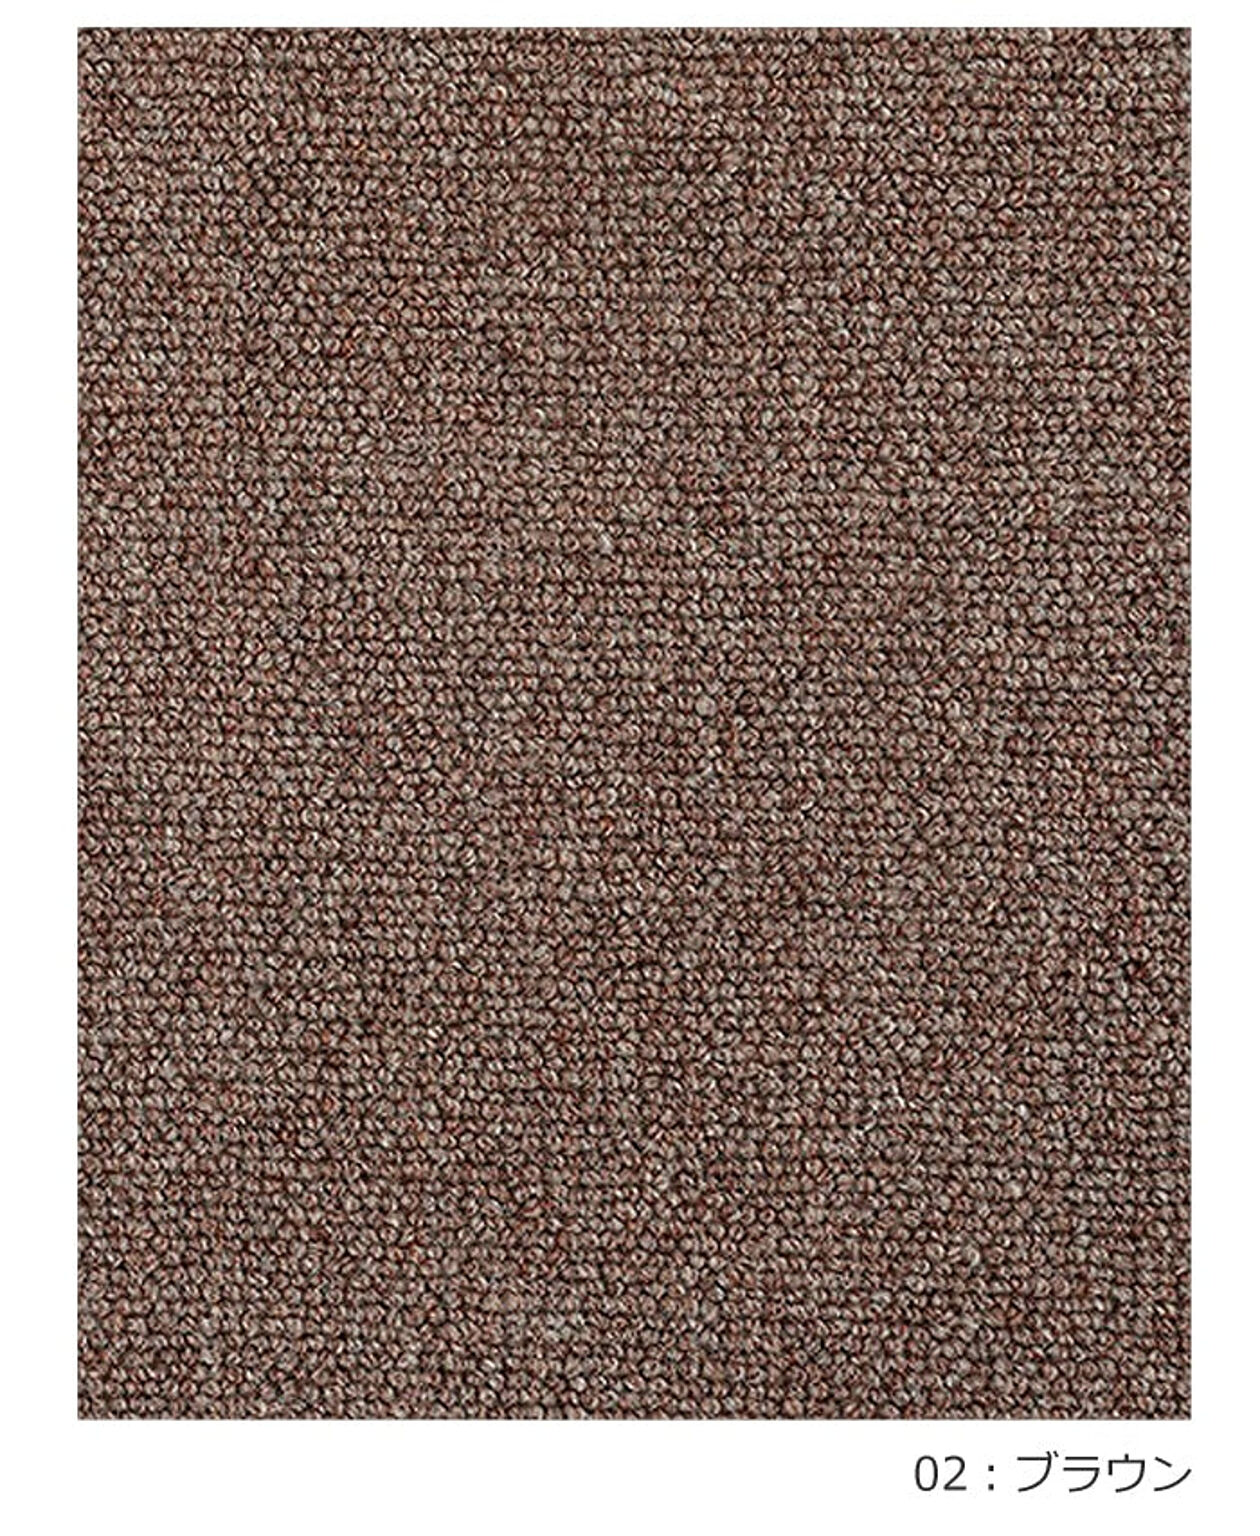 ラグ ラグマット 絨毯 日本製 防炎 防音 ウール100% カーペット prevell プレーベル デイル 約130×190cm 無地 北欧